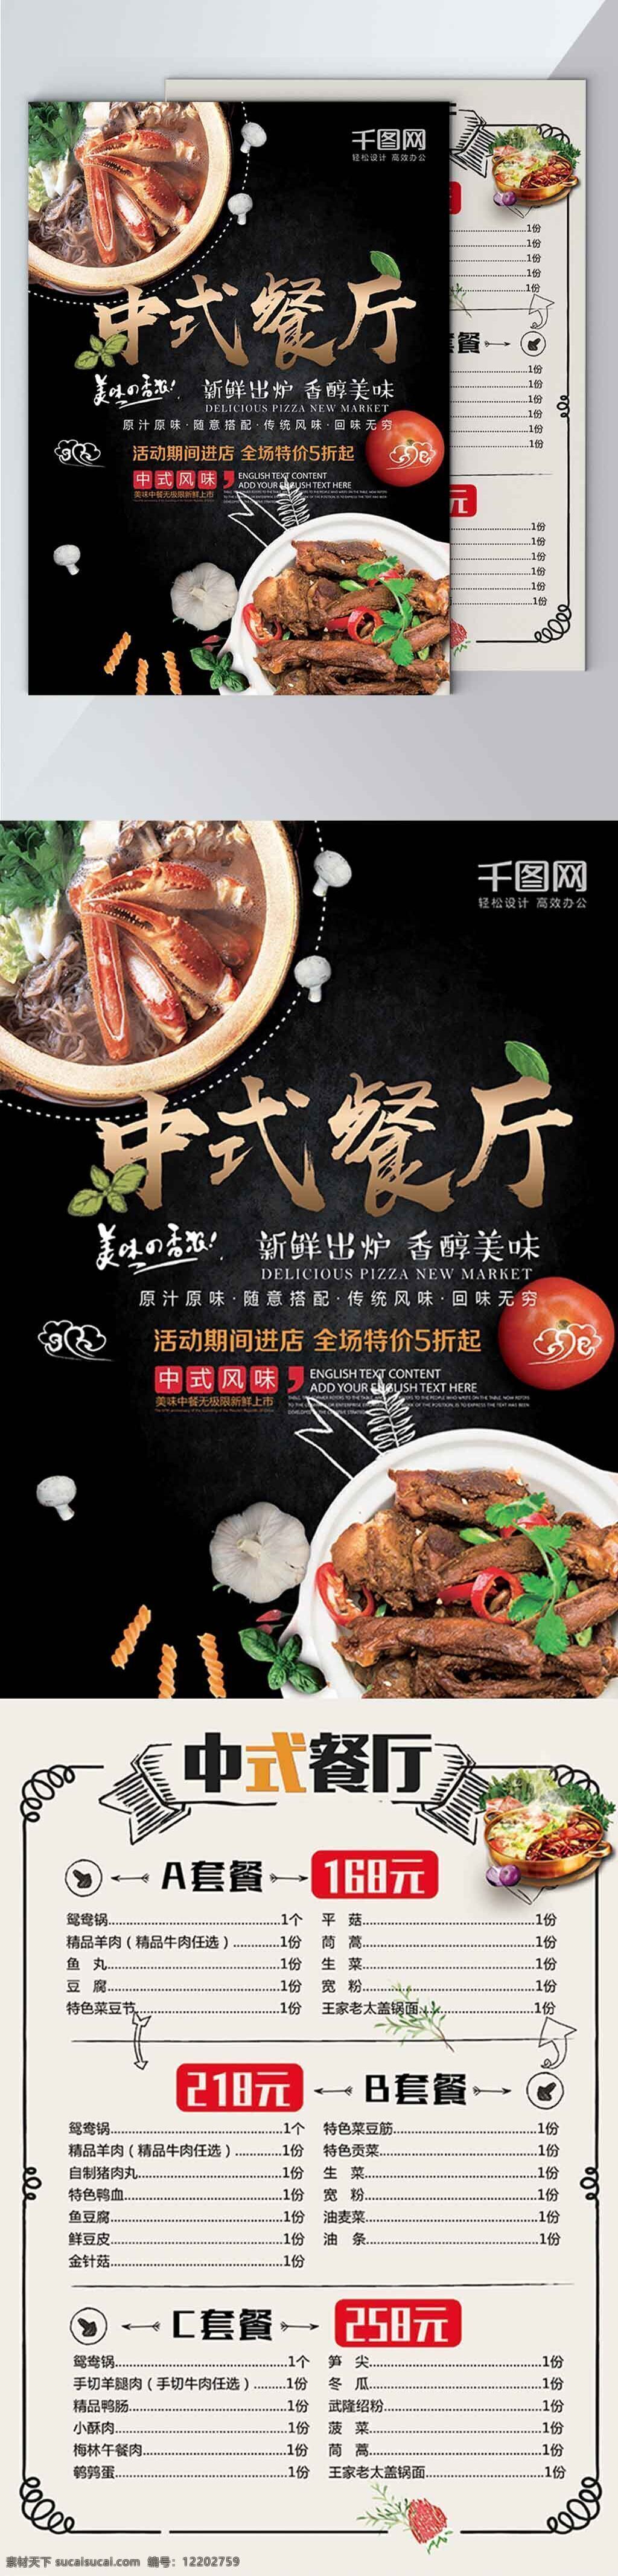 中式 餐厅 宣传单 页 菜单 海报 餐单 套餐 美味 黑色大气 香醇美味 中式风味 餐饮店 创意 个性 食堂 吃货 蟹 鸡鸭